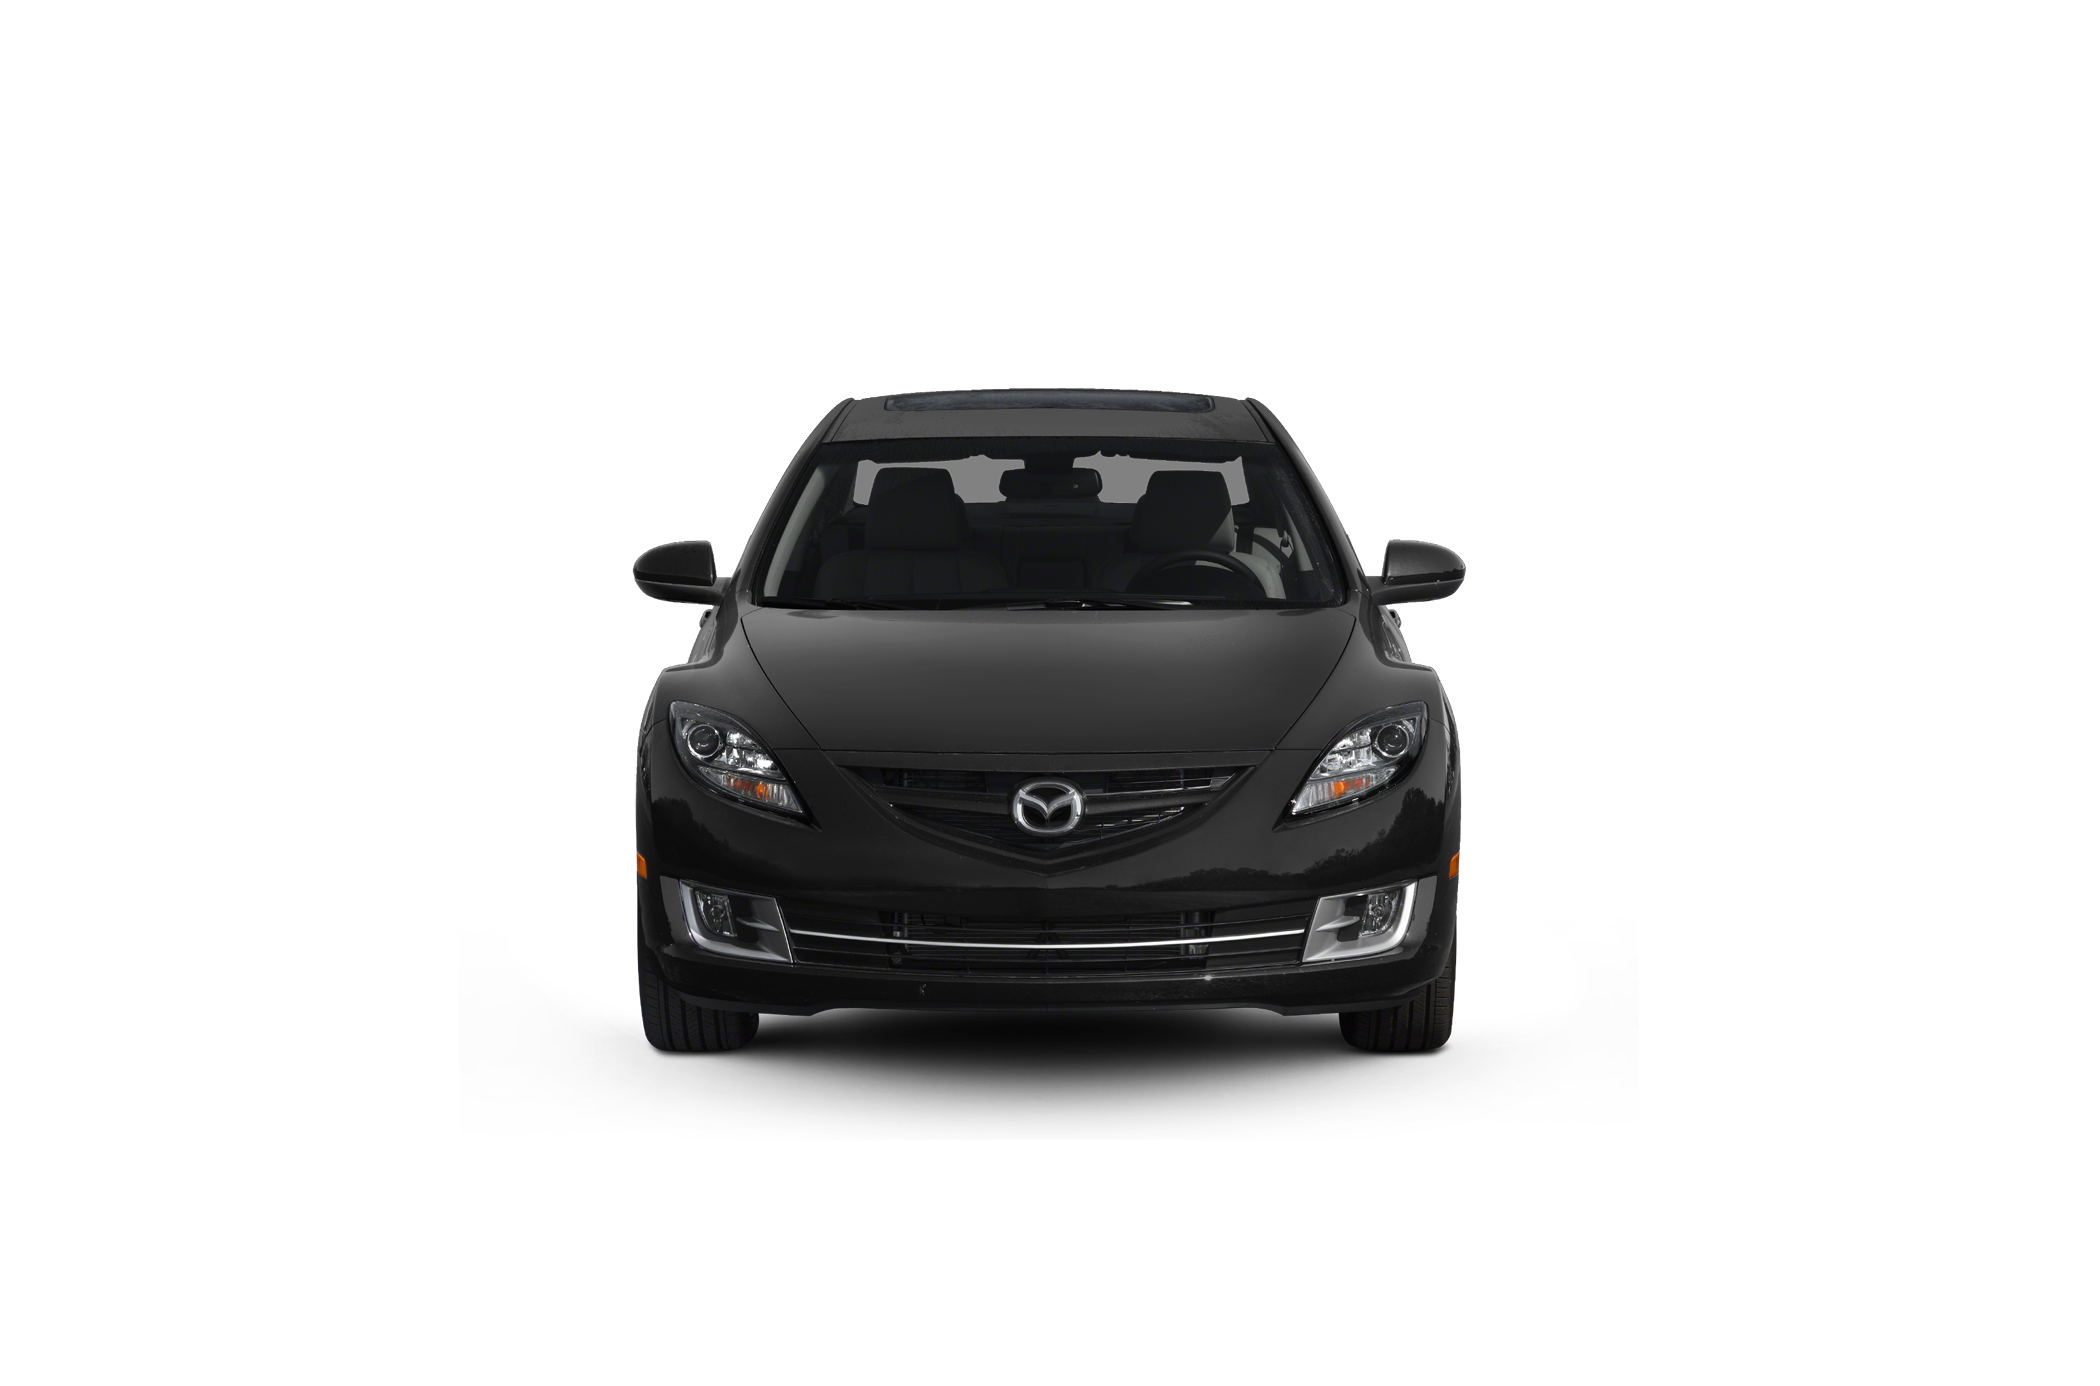 2012 Mazda Mazda6